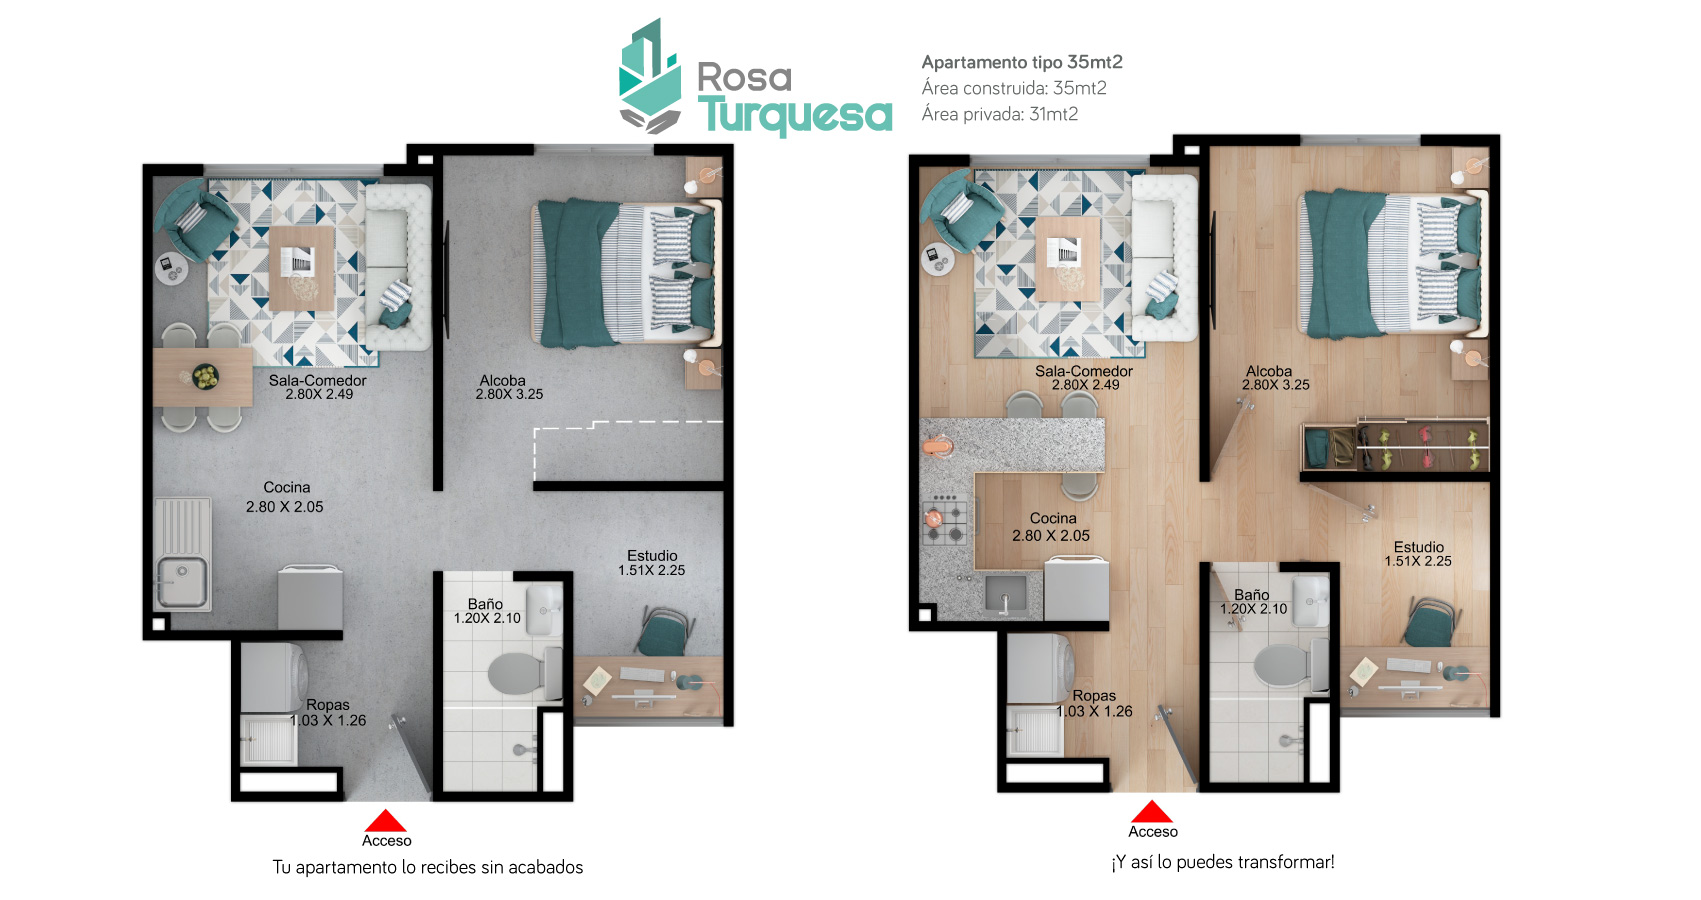 Rosa Turquesa proyecto de apartamentos con susbidio de vivienda